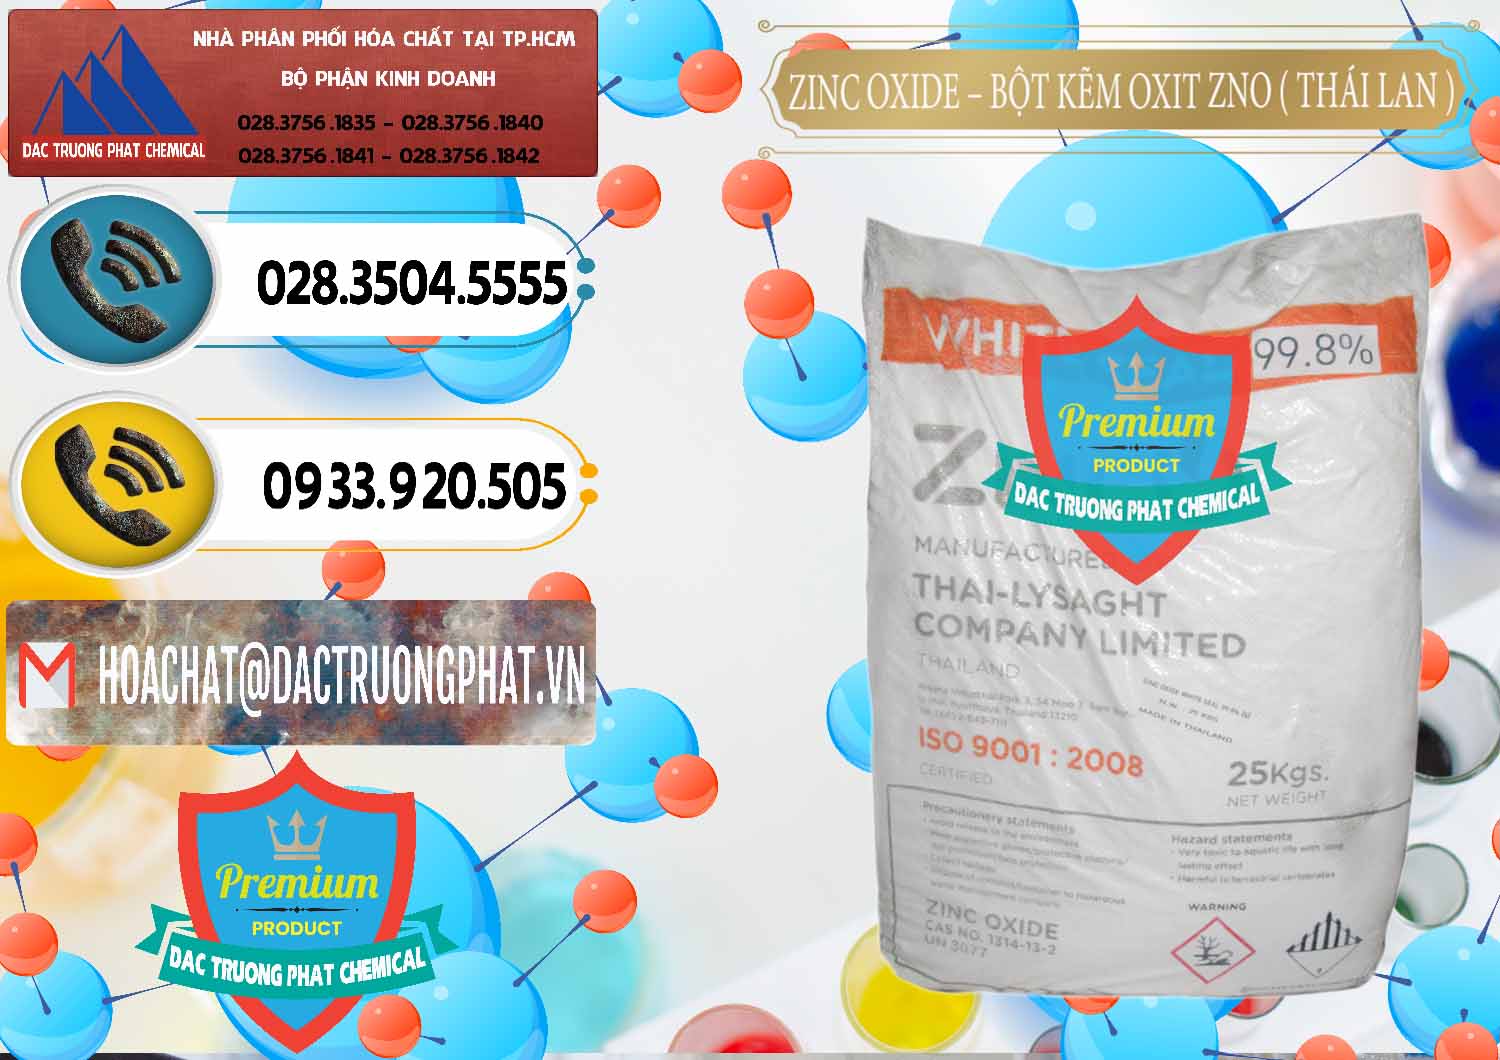 Cty nhập khẩu _ bán Zinc Oxide - Bột Kẽm Oxit ZNO Thái Lan Thailand - 0181 - Công ty chuyên cung ứng và phân phối hóa chất tại TP.HCM - hoachatdetnhuom.vn